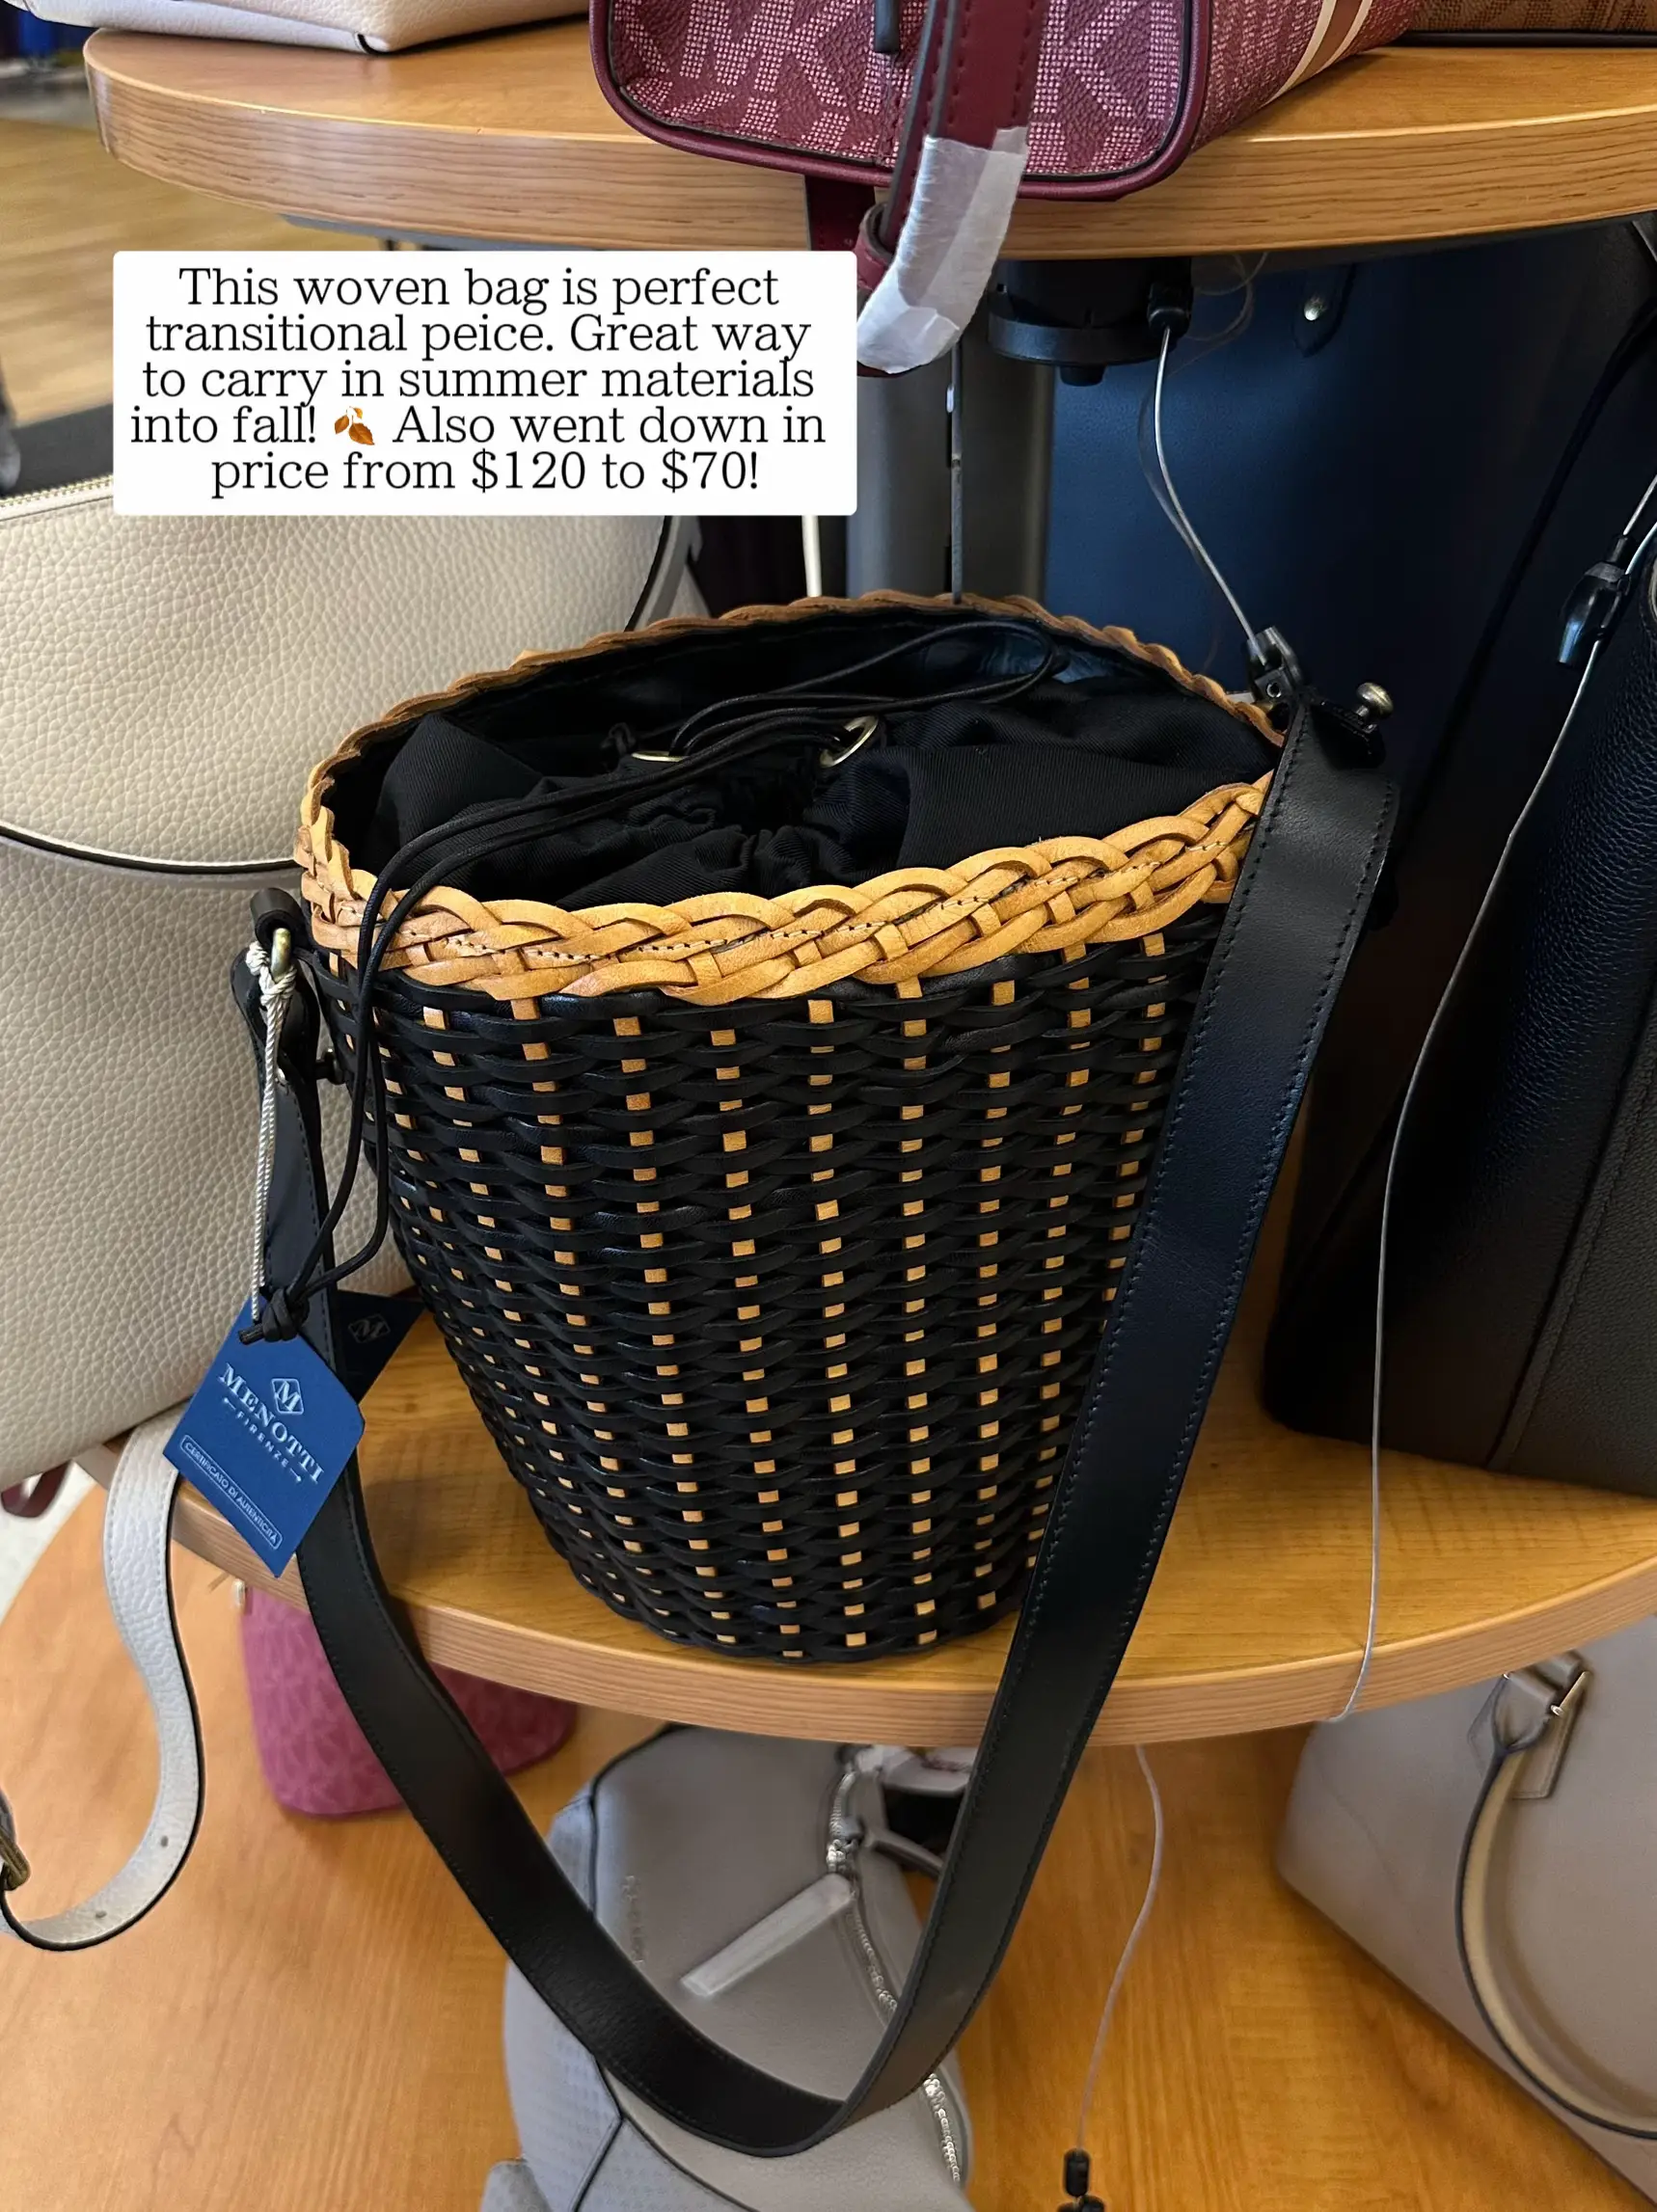 Handbag Finds at T. J. MAXX, Gallery posted by Anastasiya